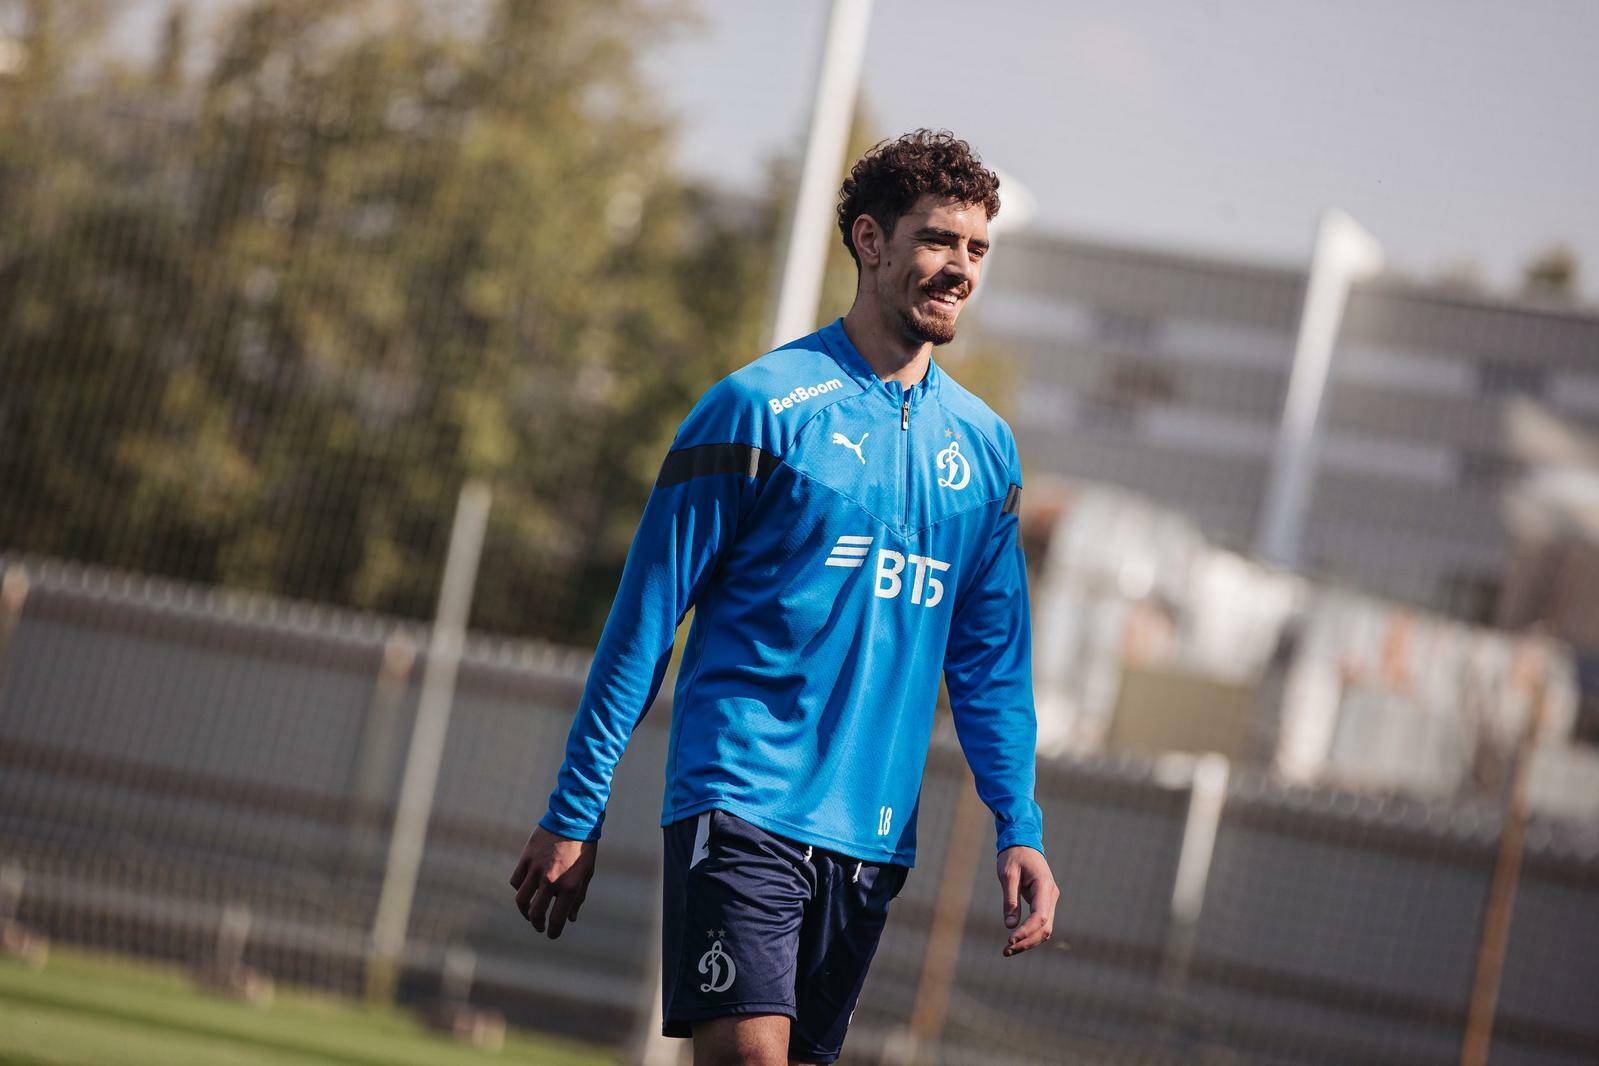 Noticias del FC "Dynamo" Moscú | ¡Feliz cumpleaños, Nicolás! Sitio oficial del club Dynamo.